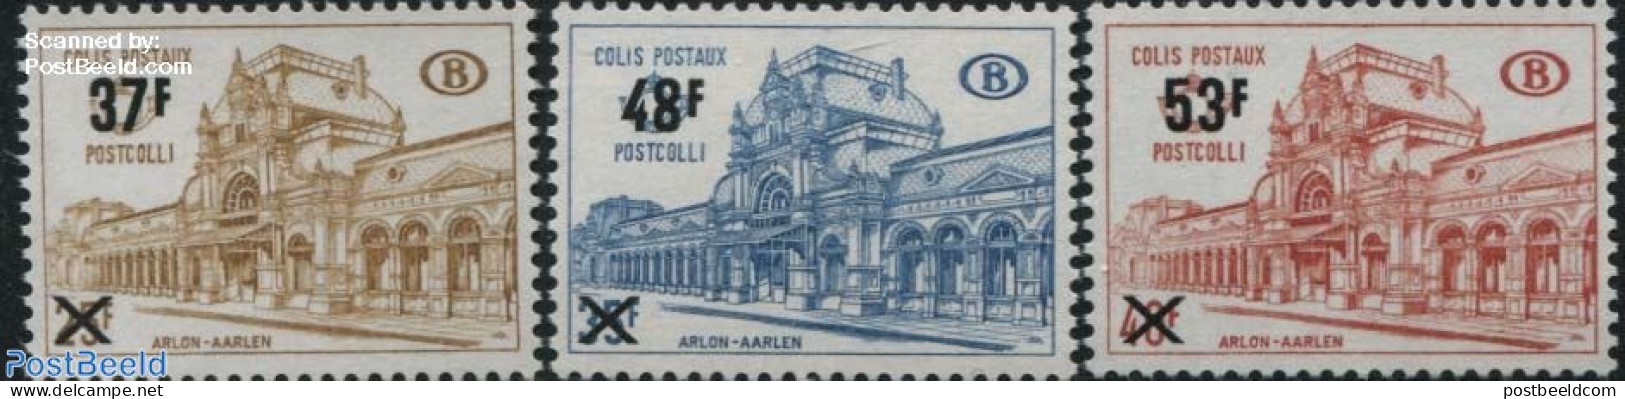 Belgium 1970 Railway Parcel Stamps 3v, Mint NH, Transport - Railways - Ongebruikt